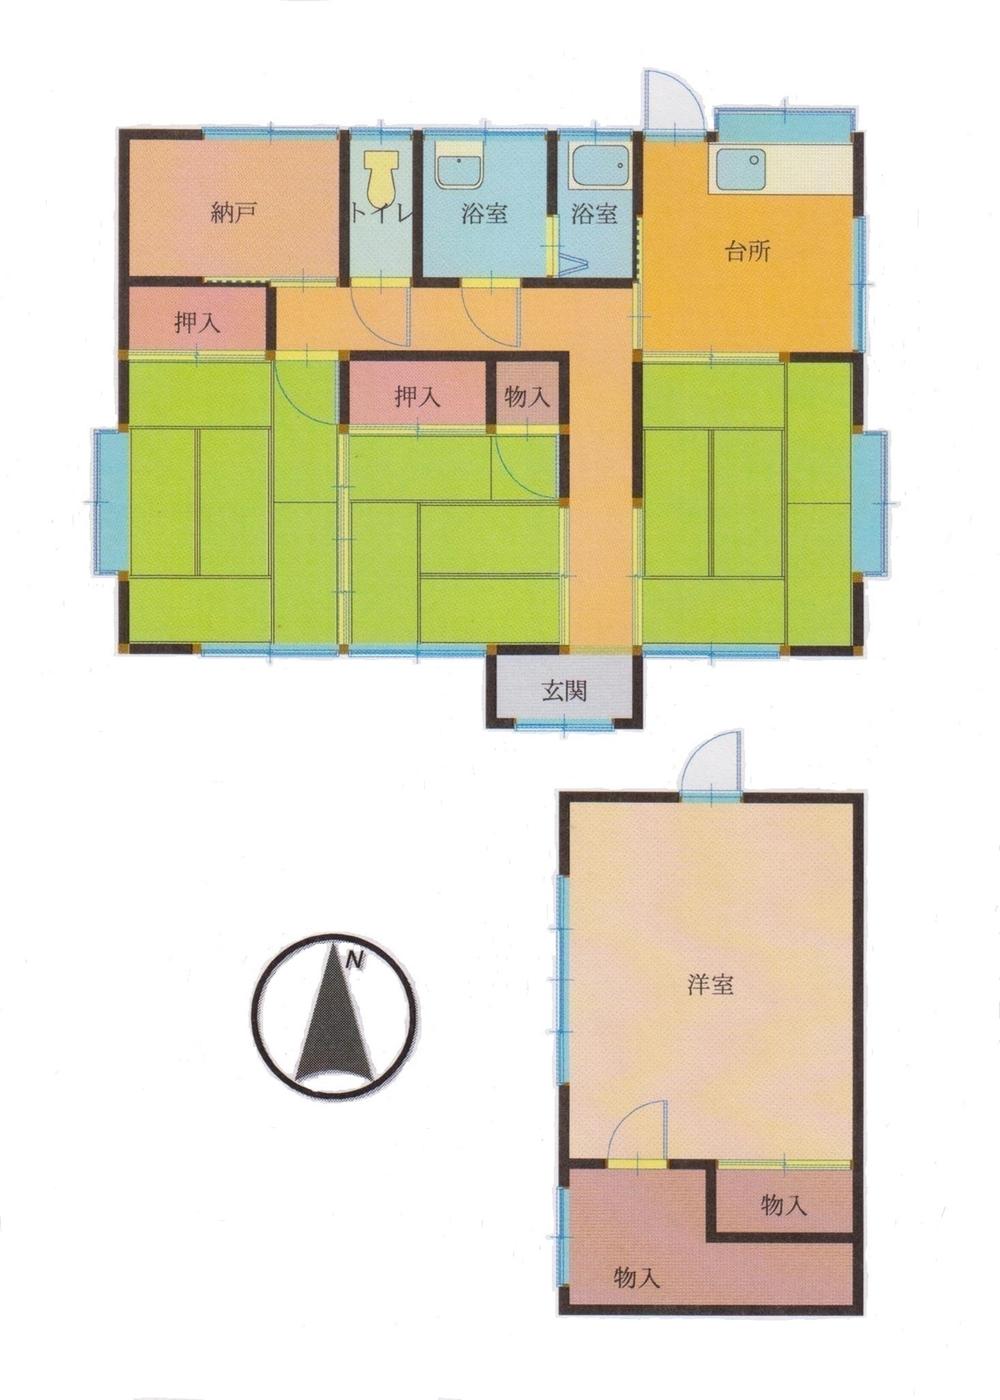 Floor plan. 8,280,000 yen, 3K + S (storeroom), Land area 598.71 sq m , Building area 60.71 sq m